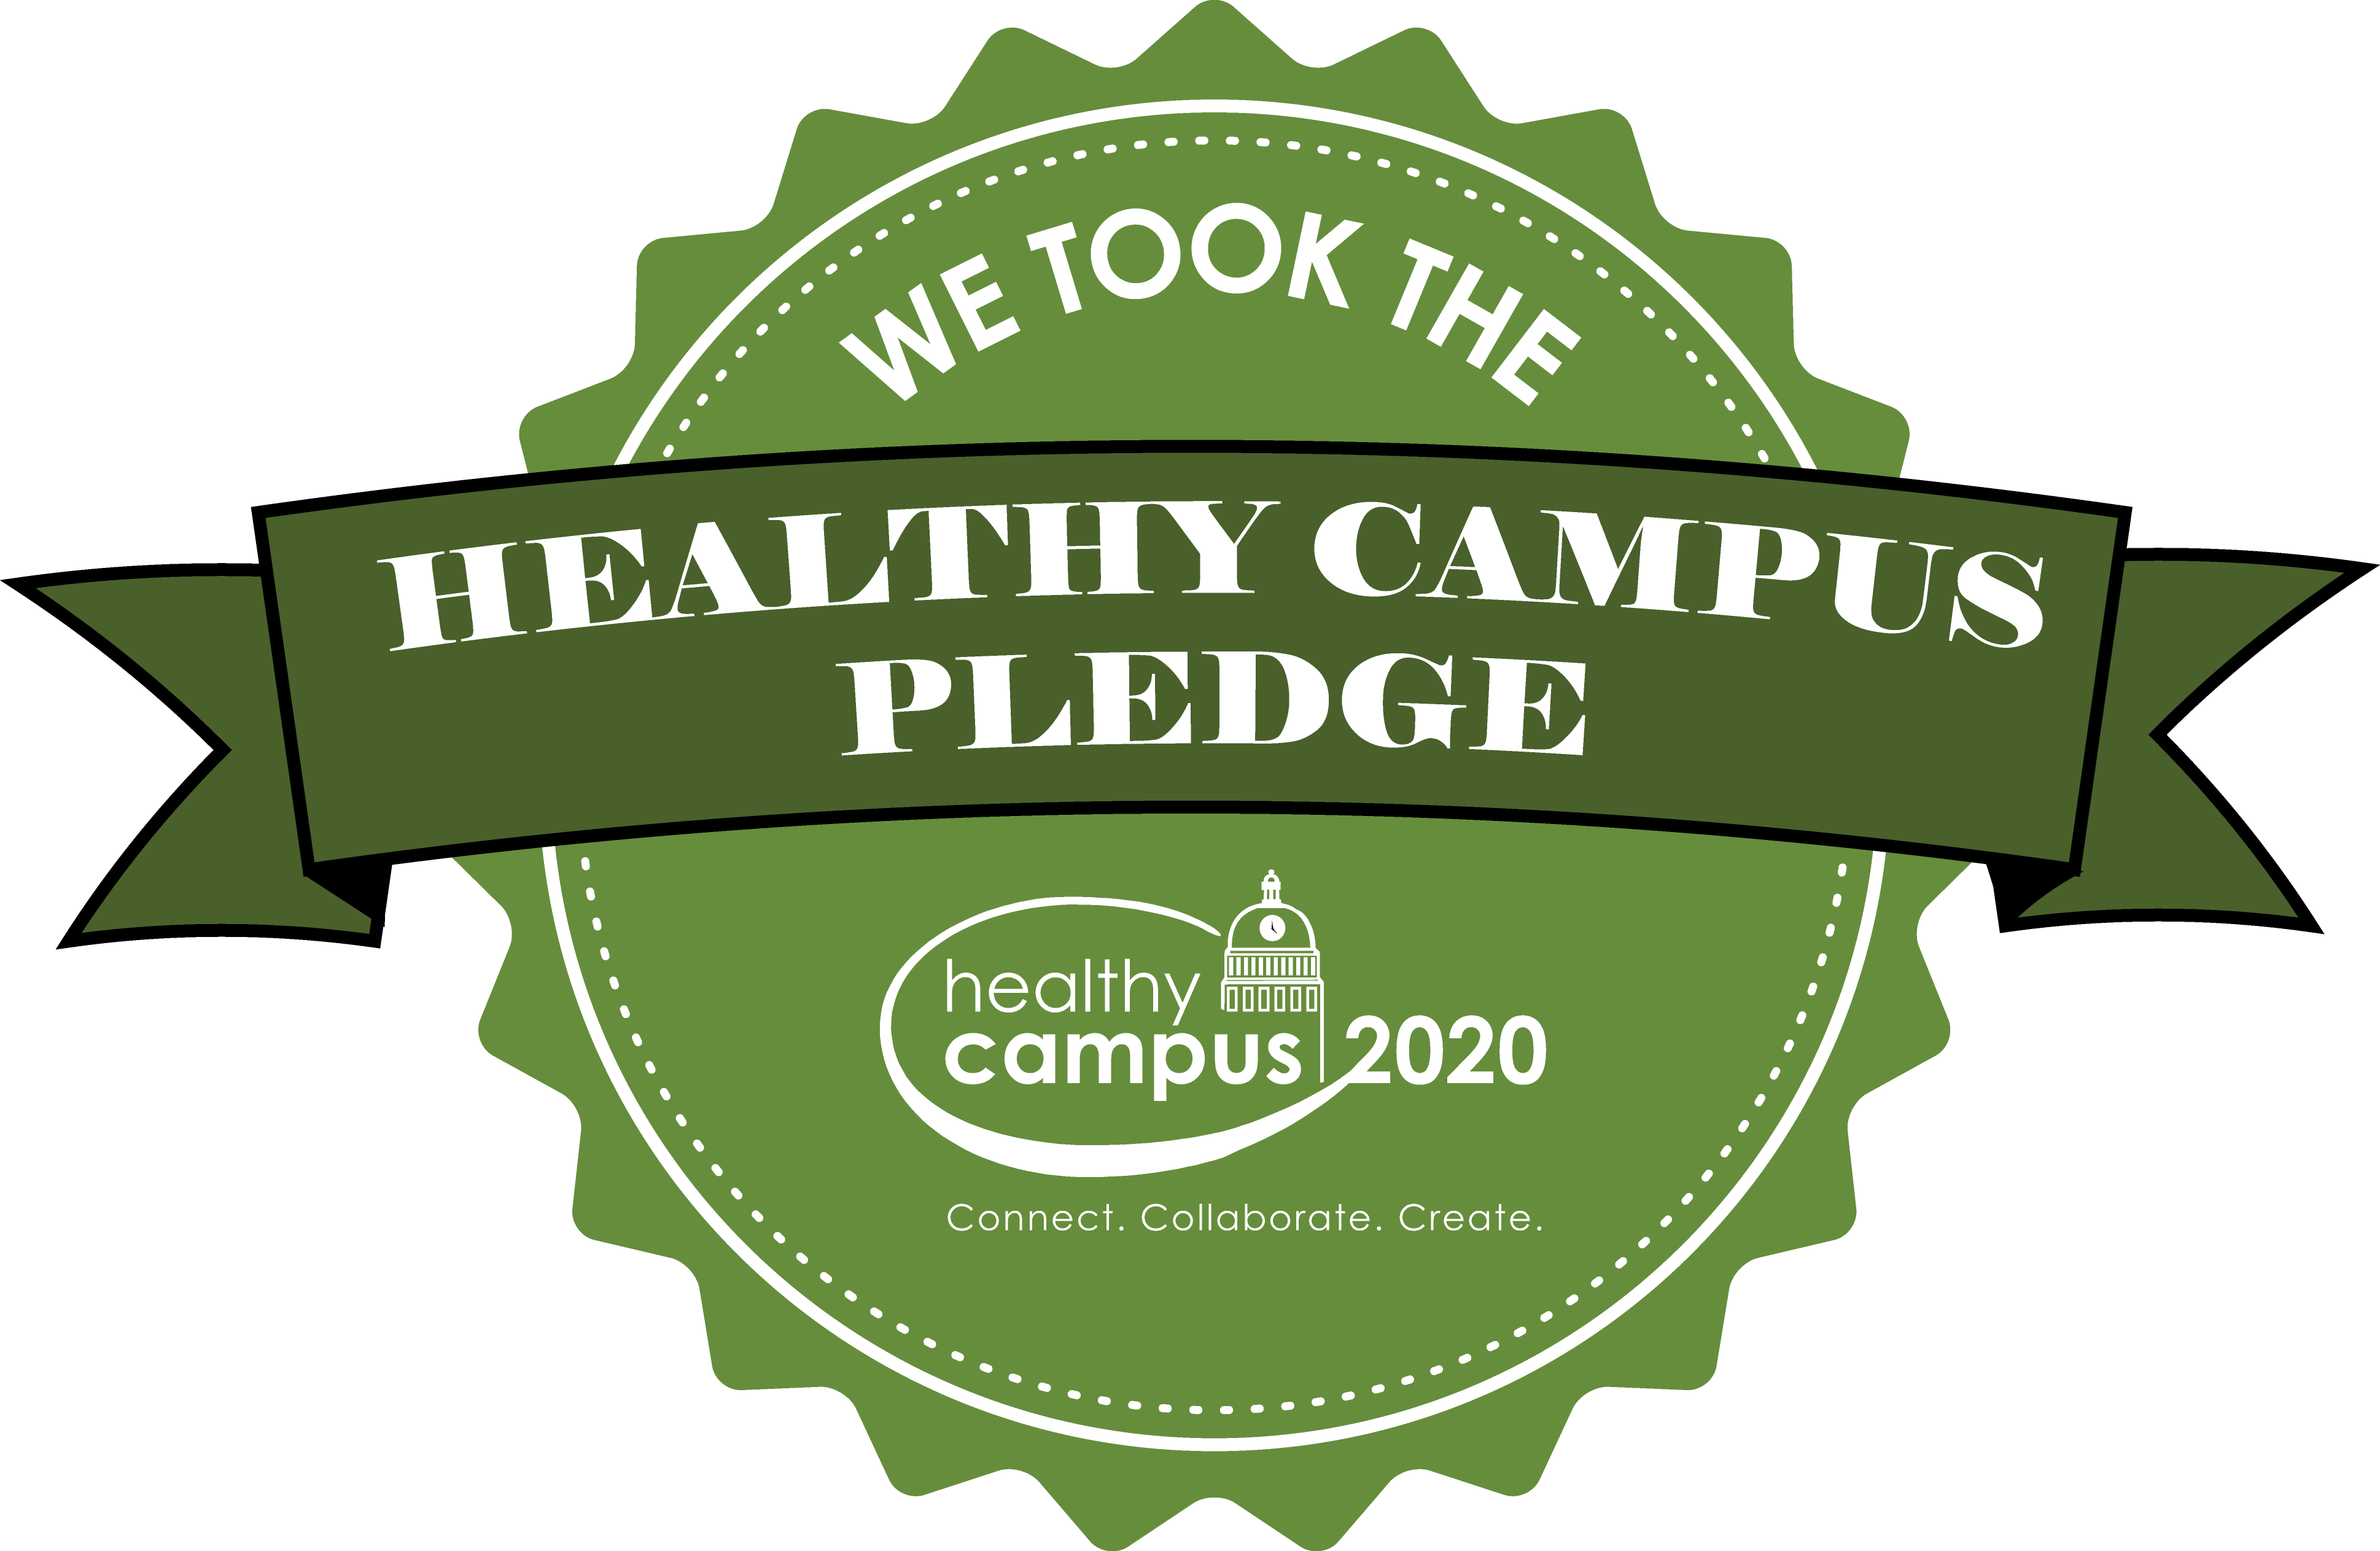 Healthy Campus - Healthy Campus 2020 (3876x2526), Png Download